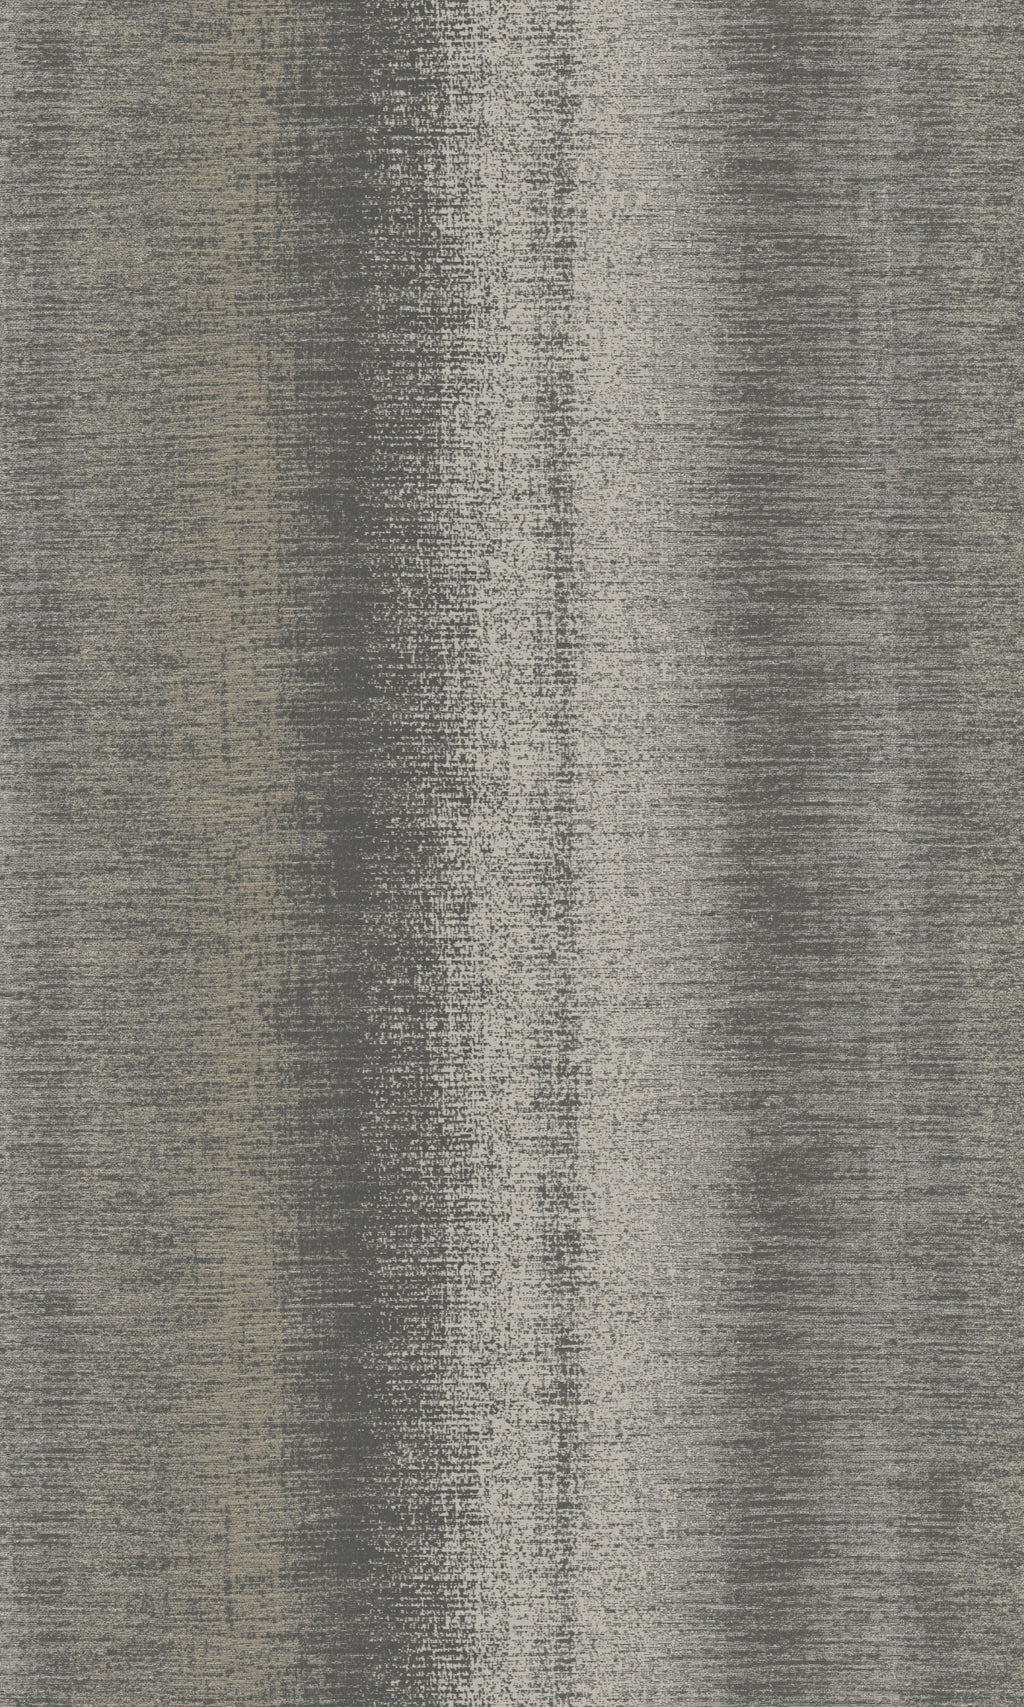 Walnut Woven Stripe Metallic Wallpaper R8177